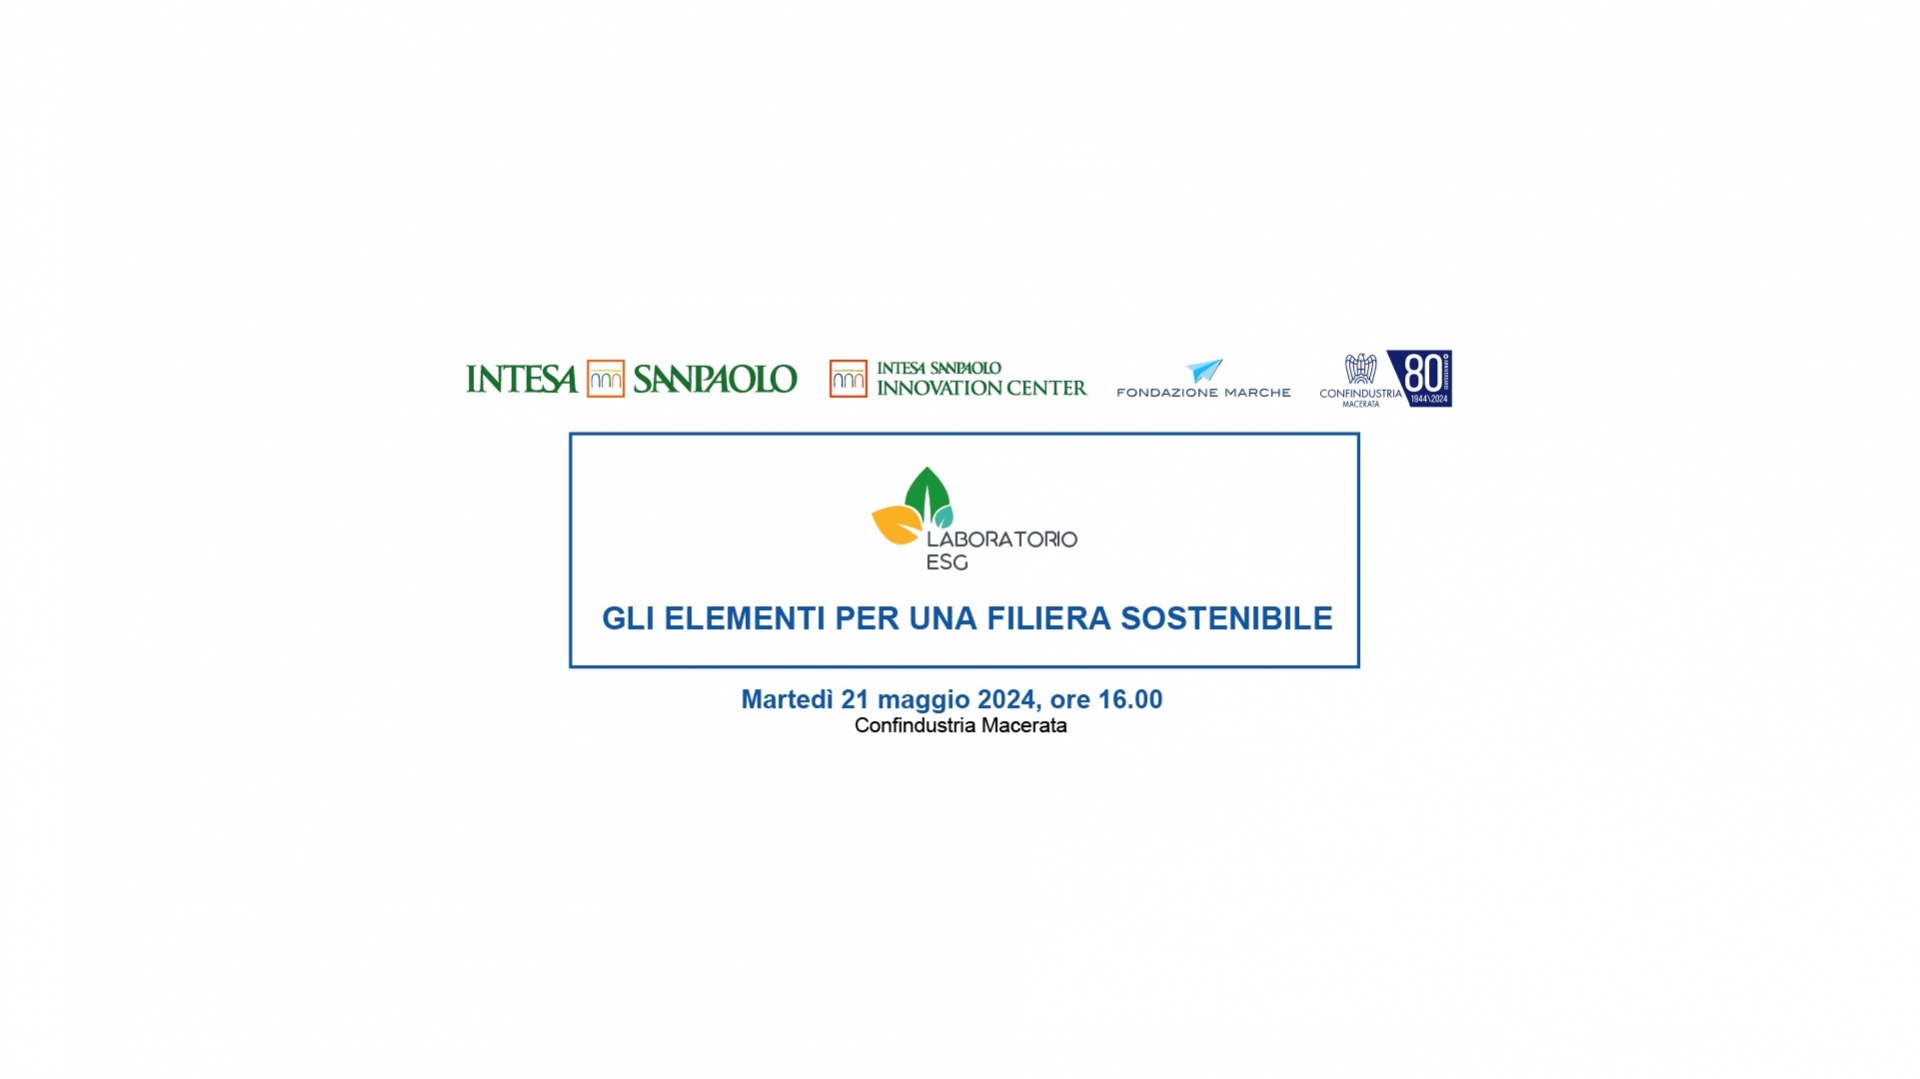 LABORATORIO ESG: Gli elementi per una filiera sostenibile - Martedì 21 maggio ore 16.00